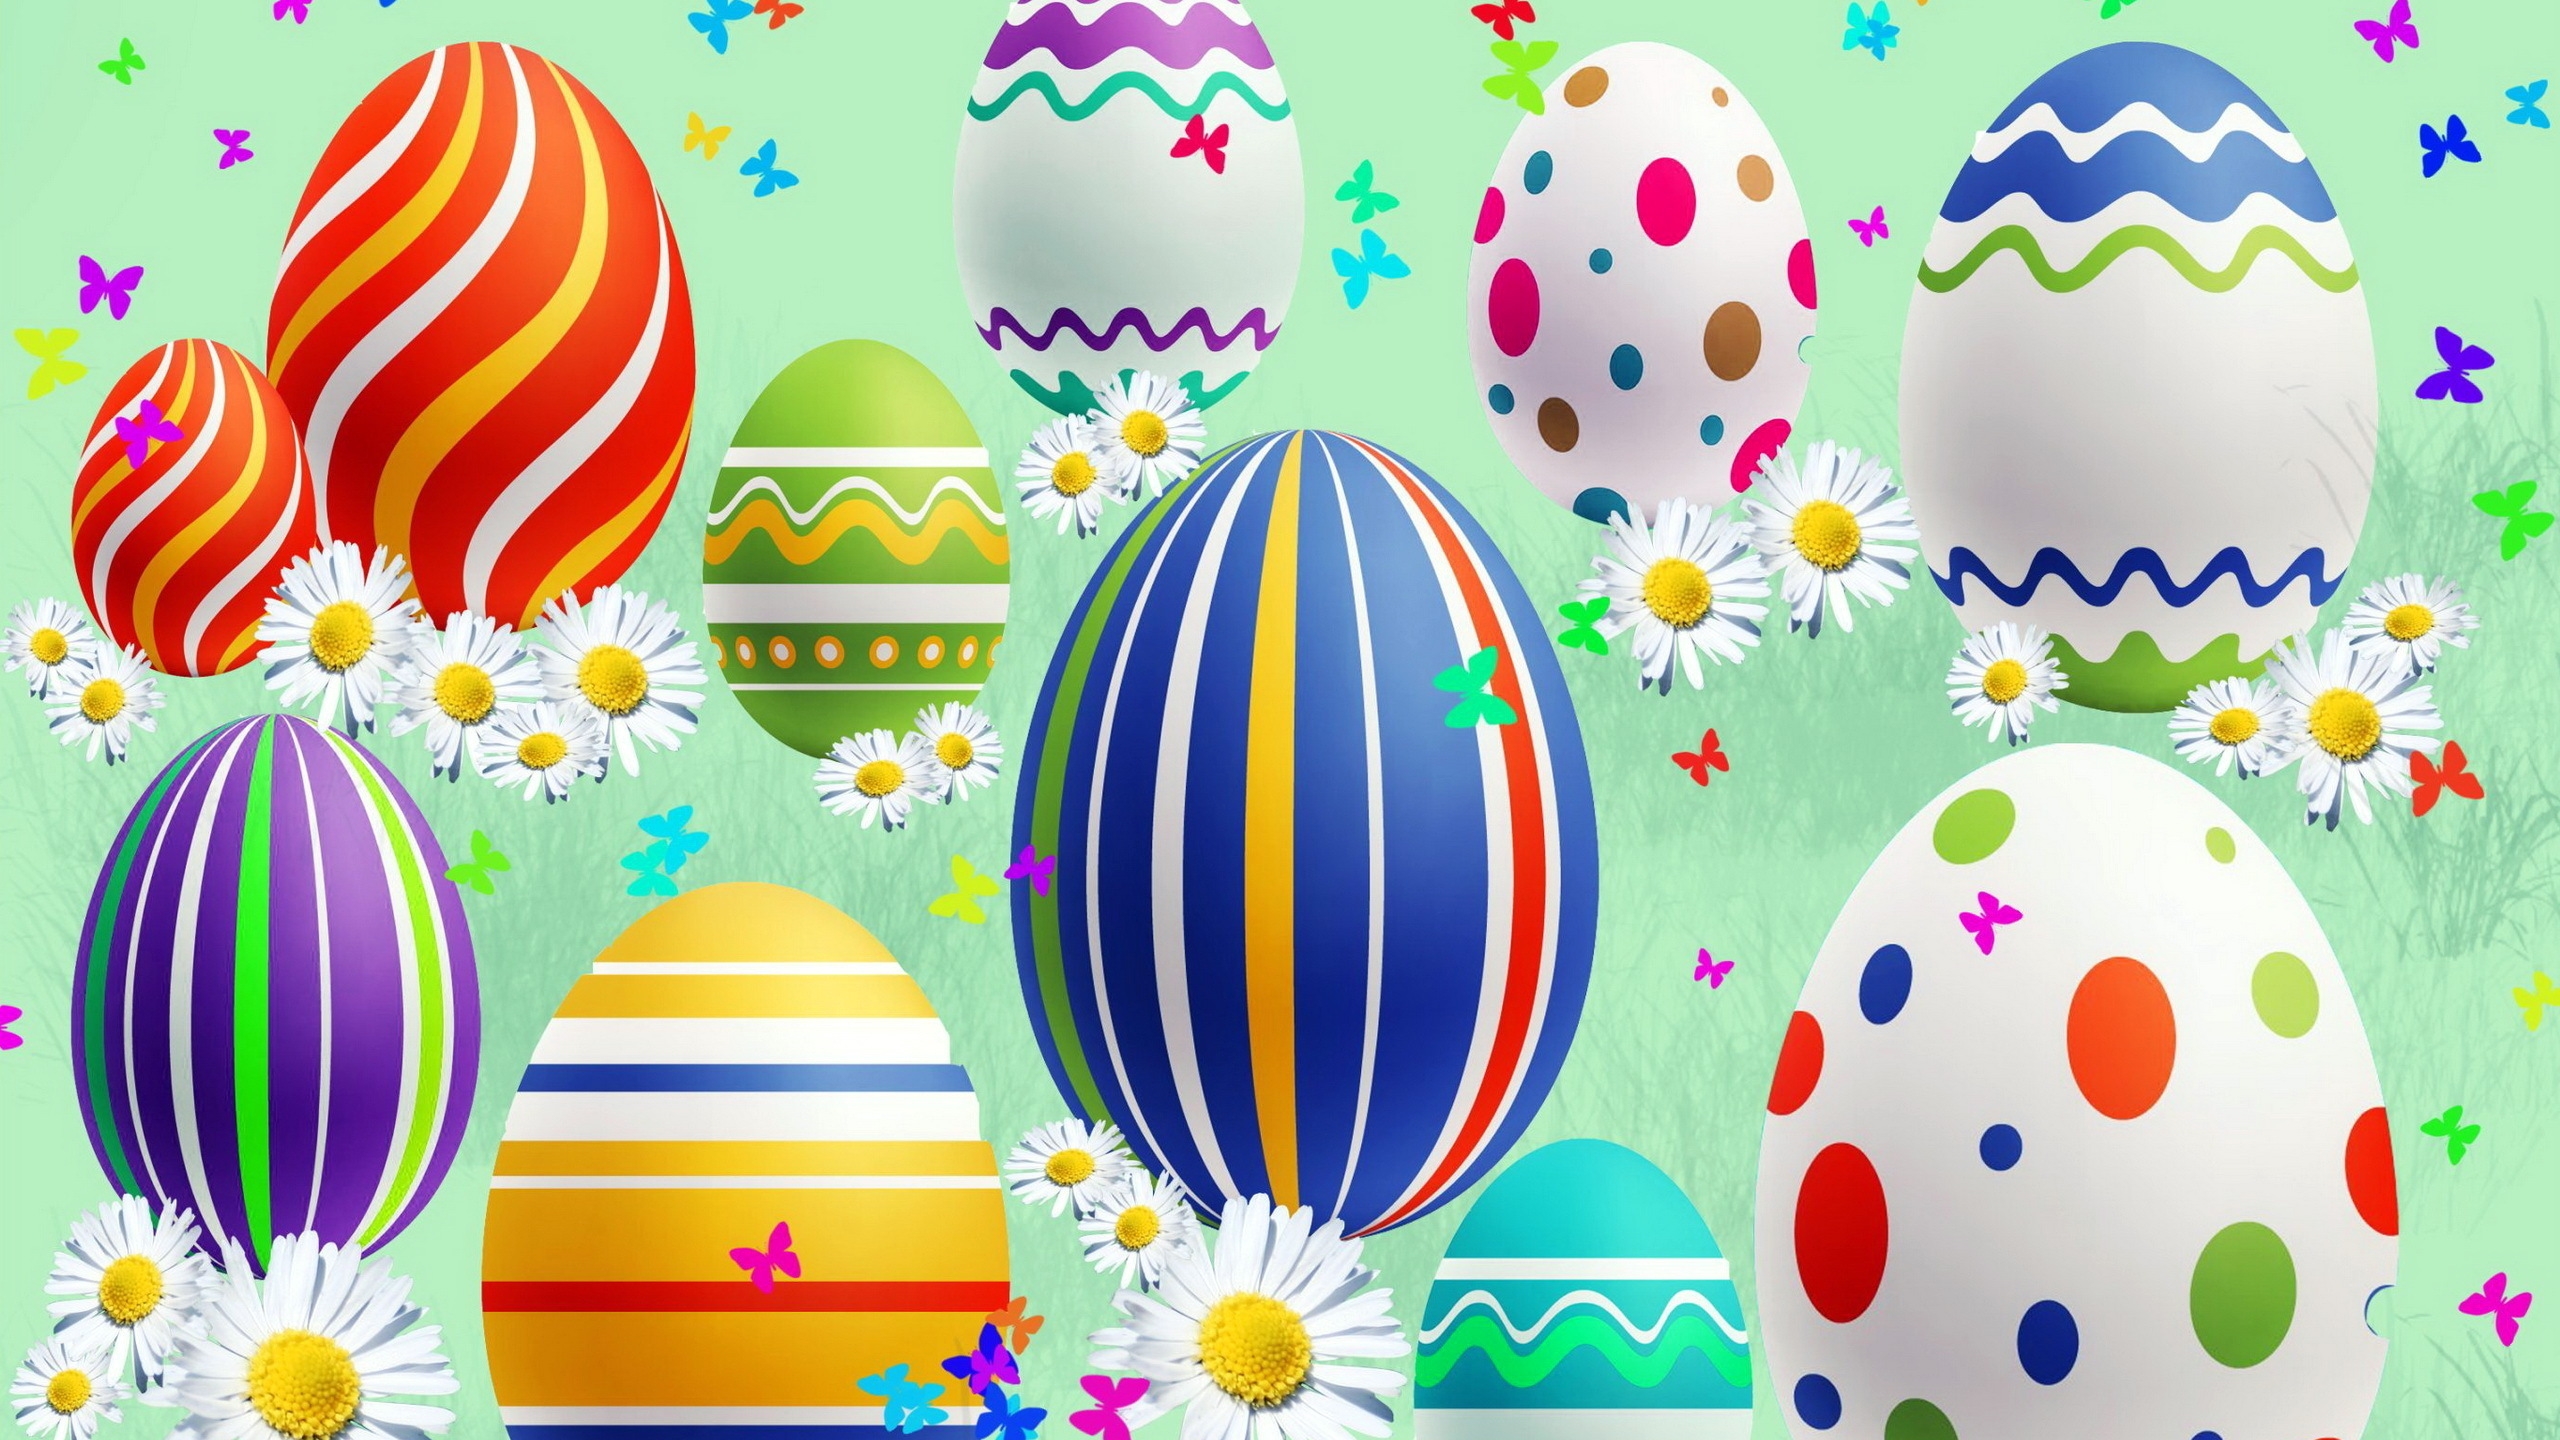 Lovely Easter Eggs for 2560x1440 HDTV resolution